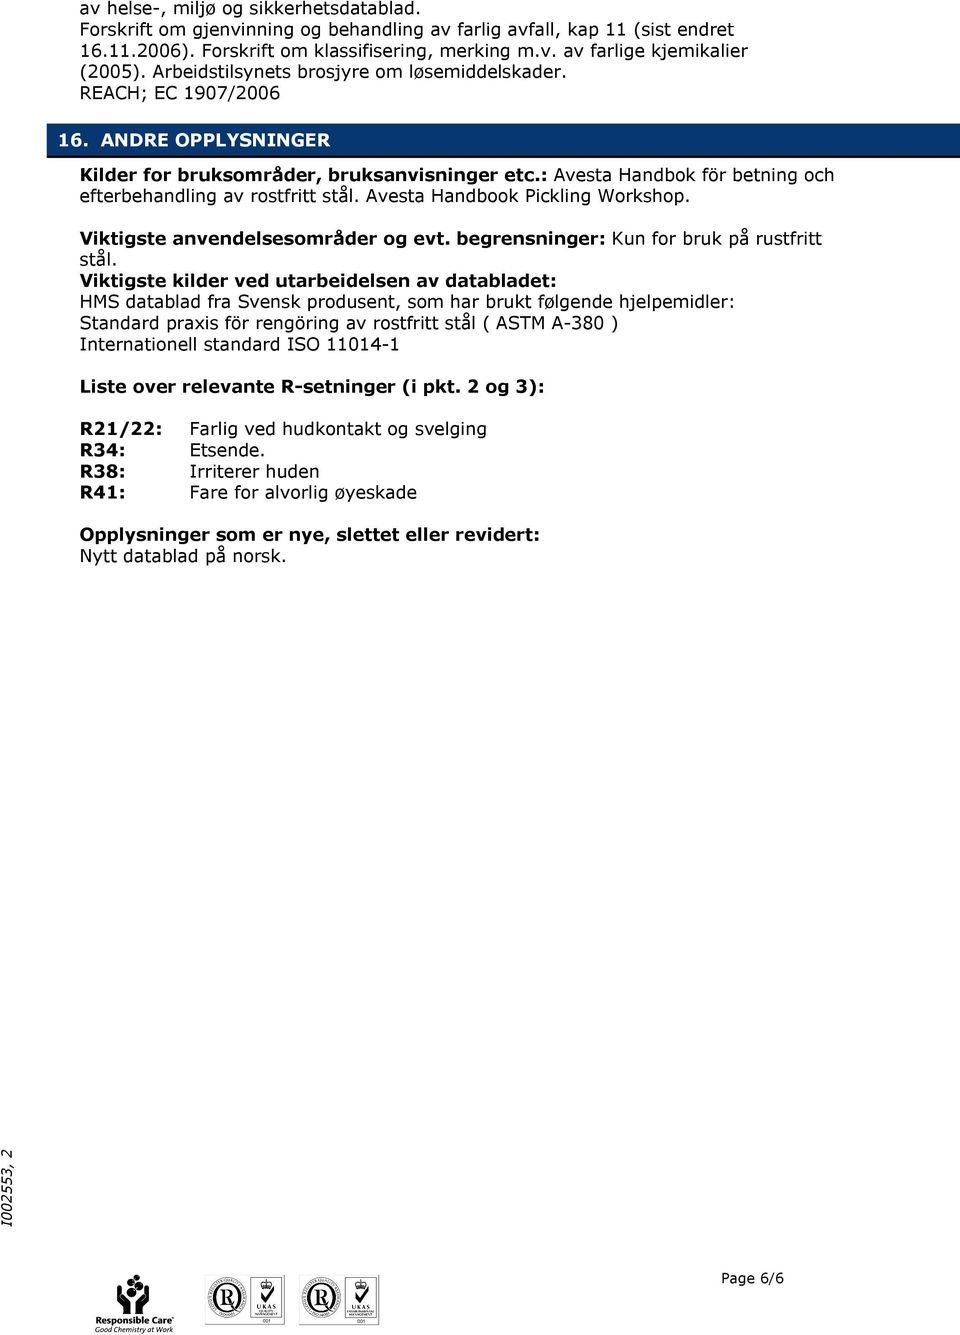 : Avesta Handbok för betning och efterbehandling av rostfritt stål. Avesta Handbook Pickling Workshop. Viktigste anvendelsesområder og evt. begrensninger: Kun for bruk på rustfritt stål.